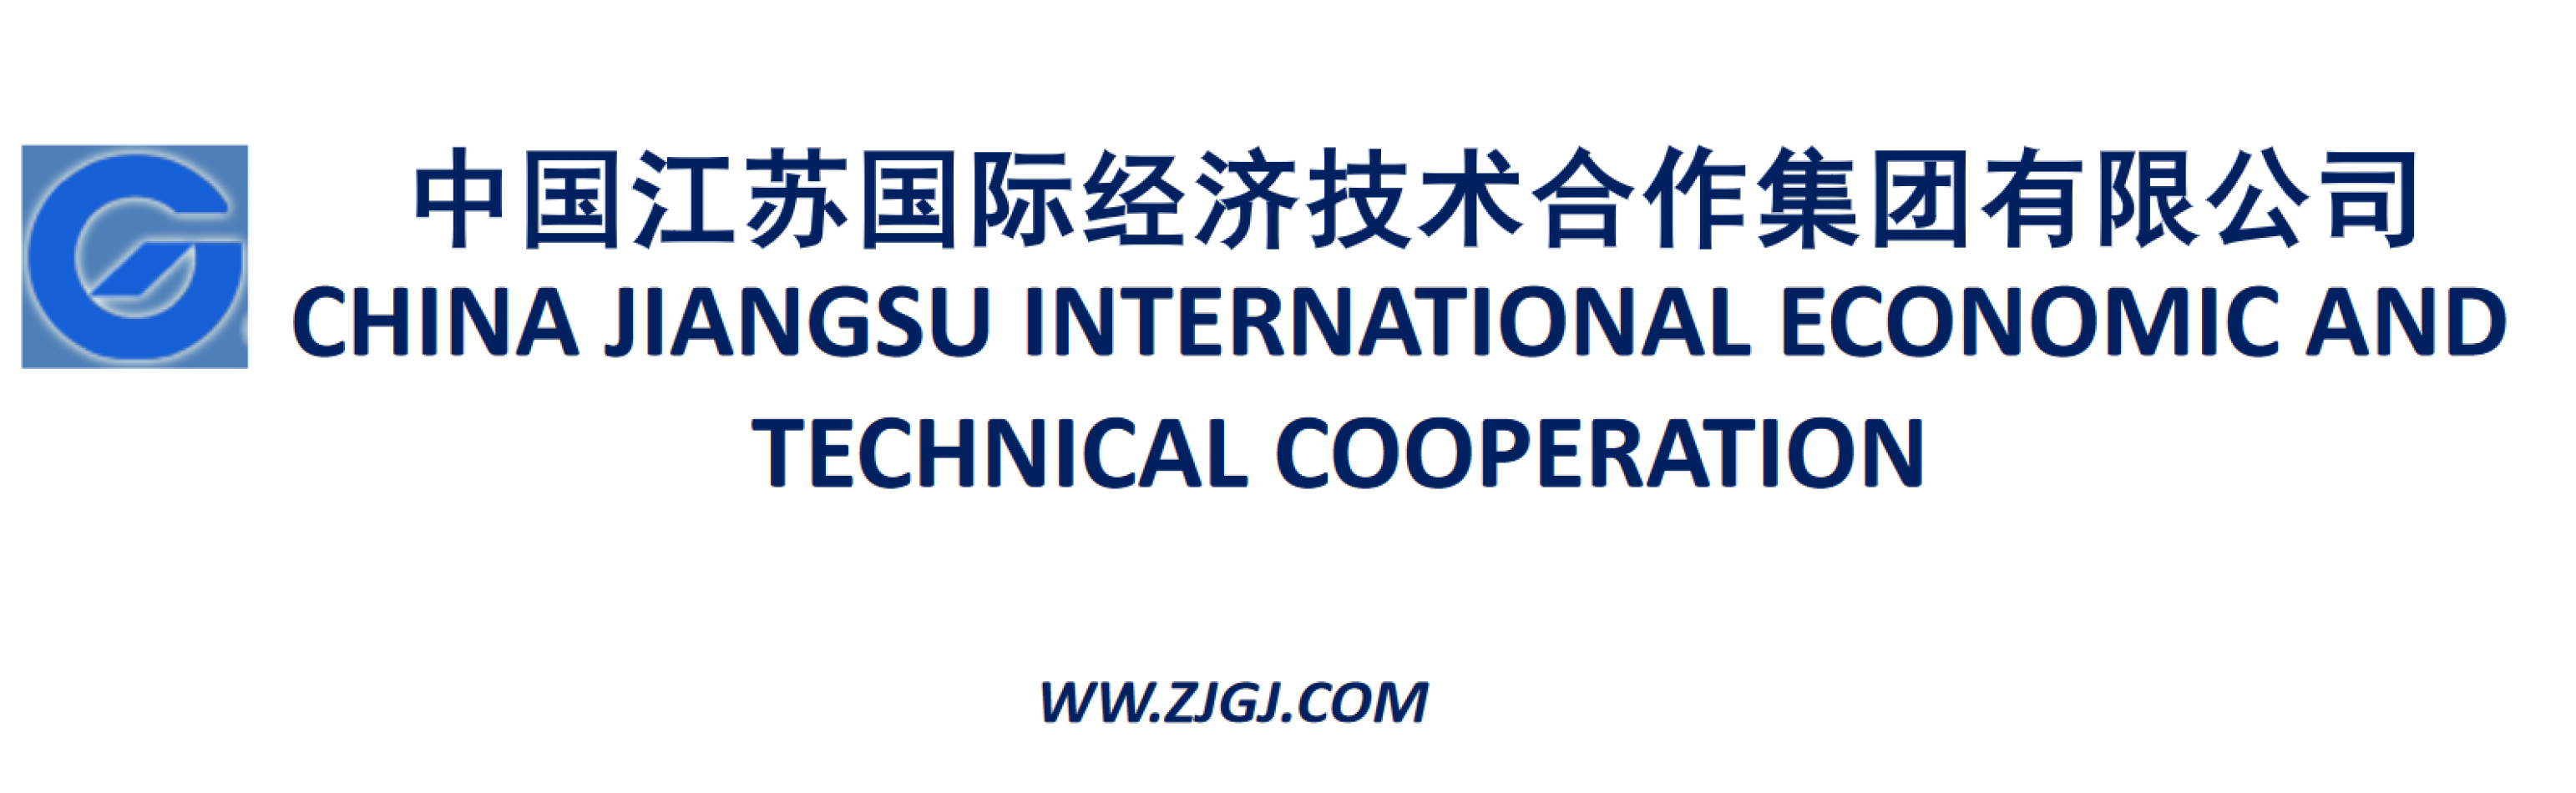 CHINA JIANGSU INTERNATIONAL ECONOMIC AND TECHNICAL COOPERATION GROUP LTD.